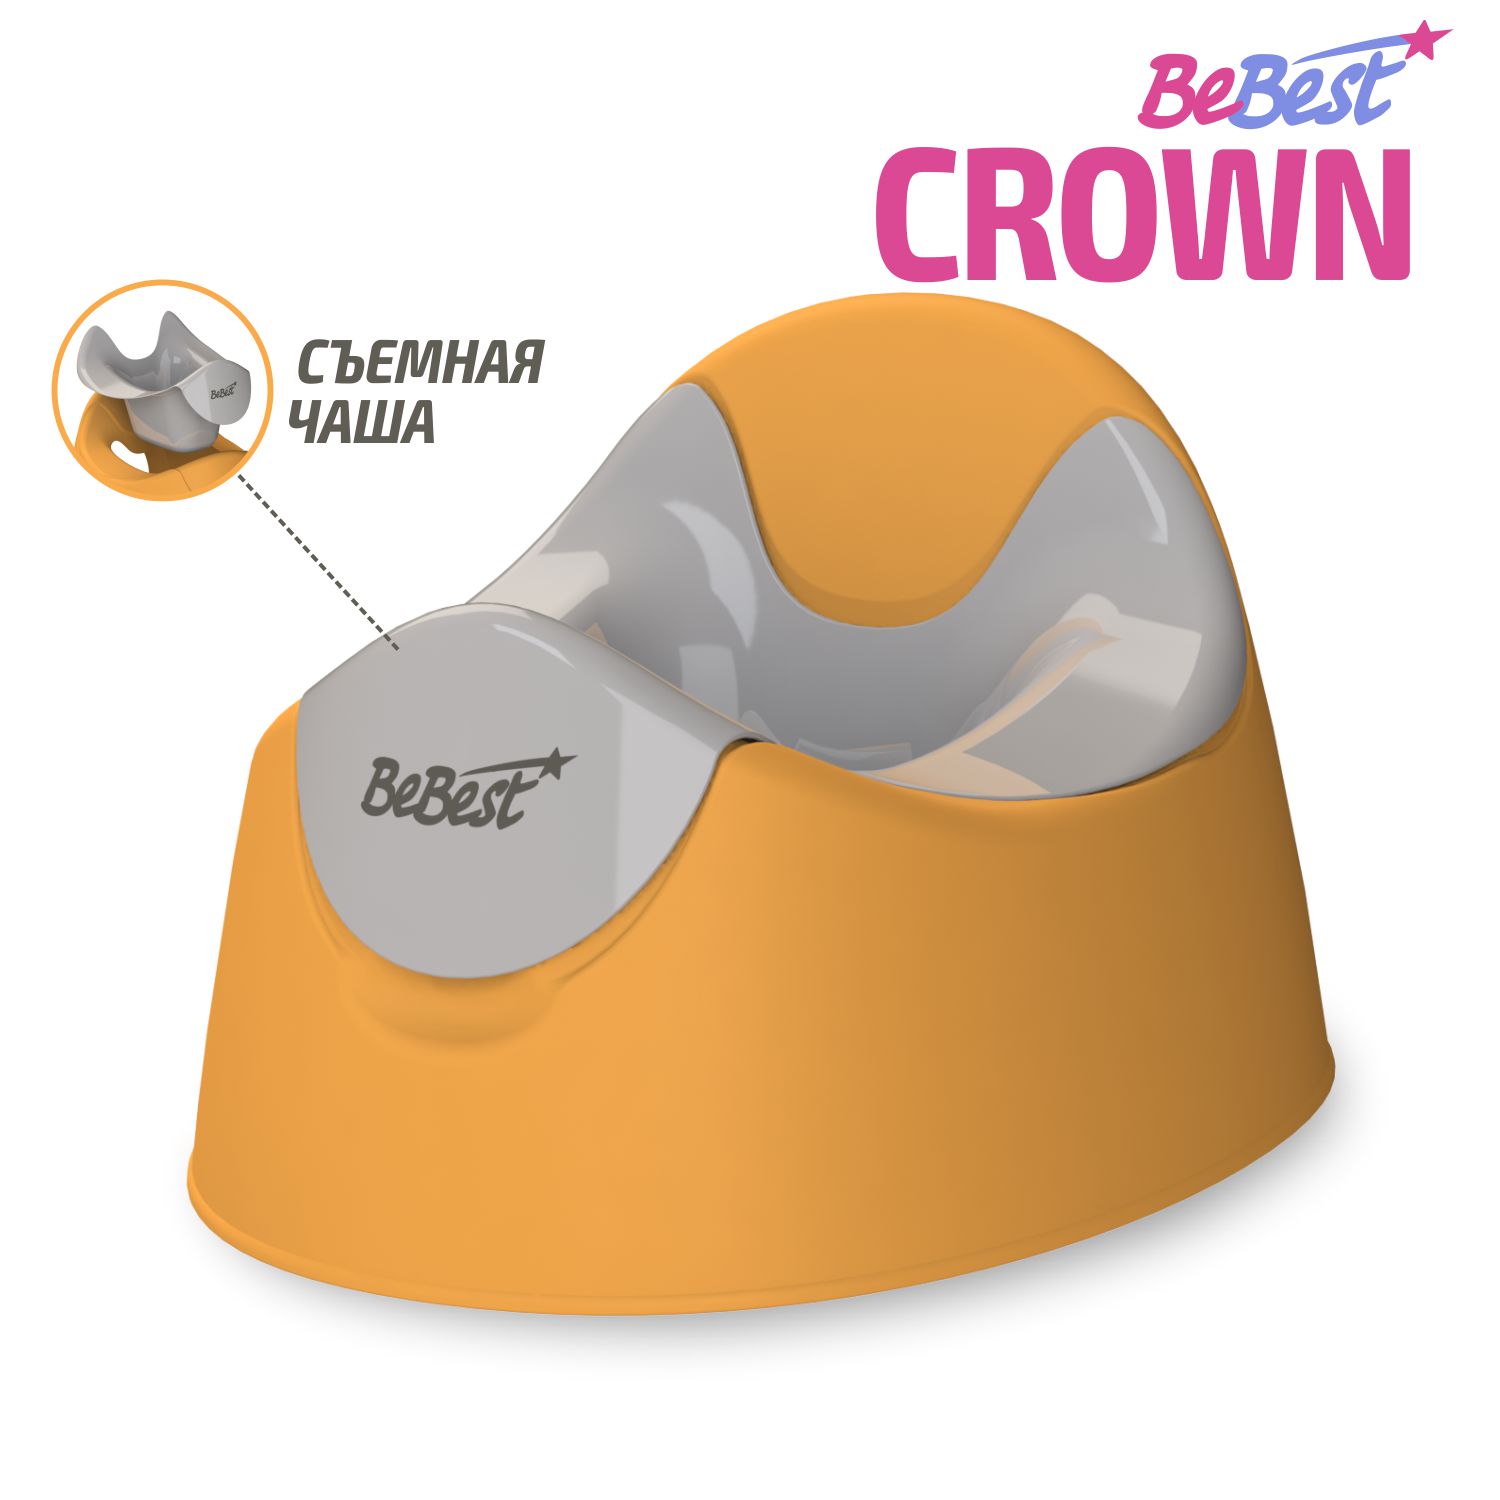 Горшок детский BeBest Crown, оранжевый/серый